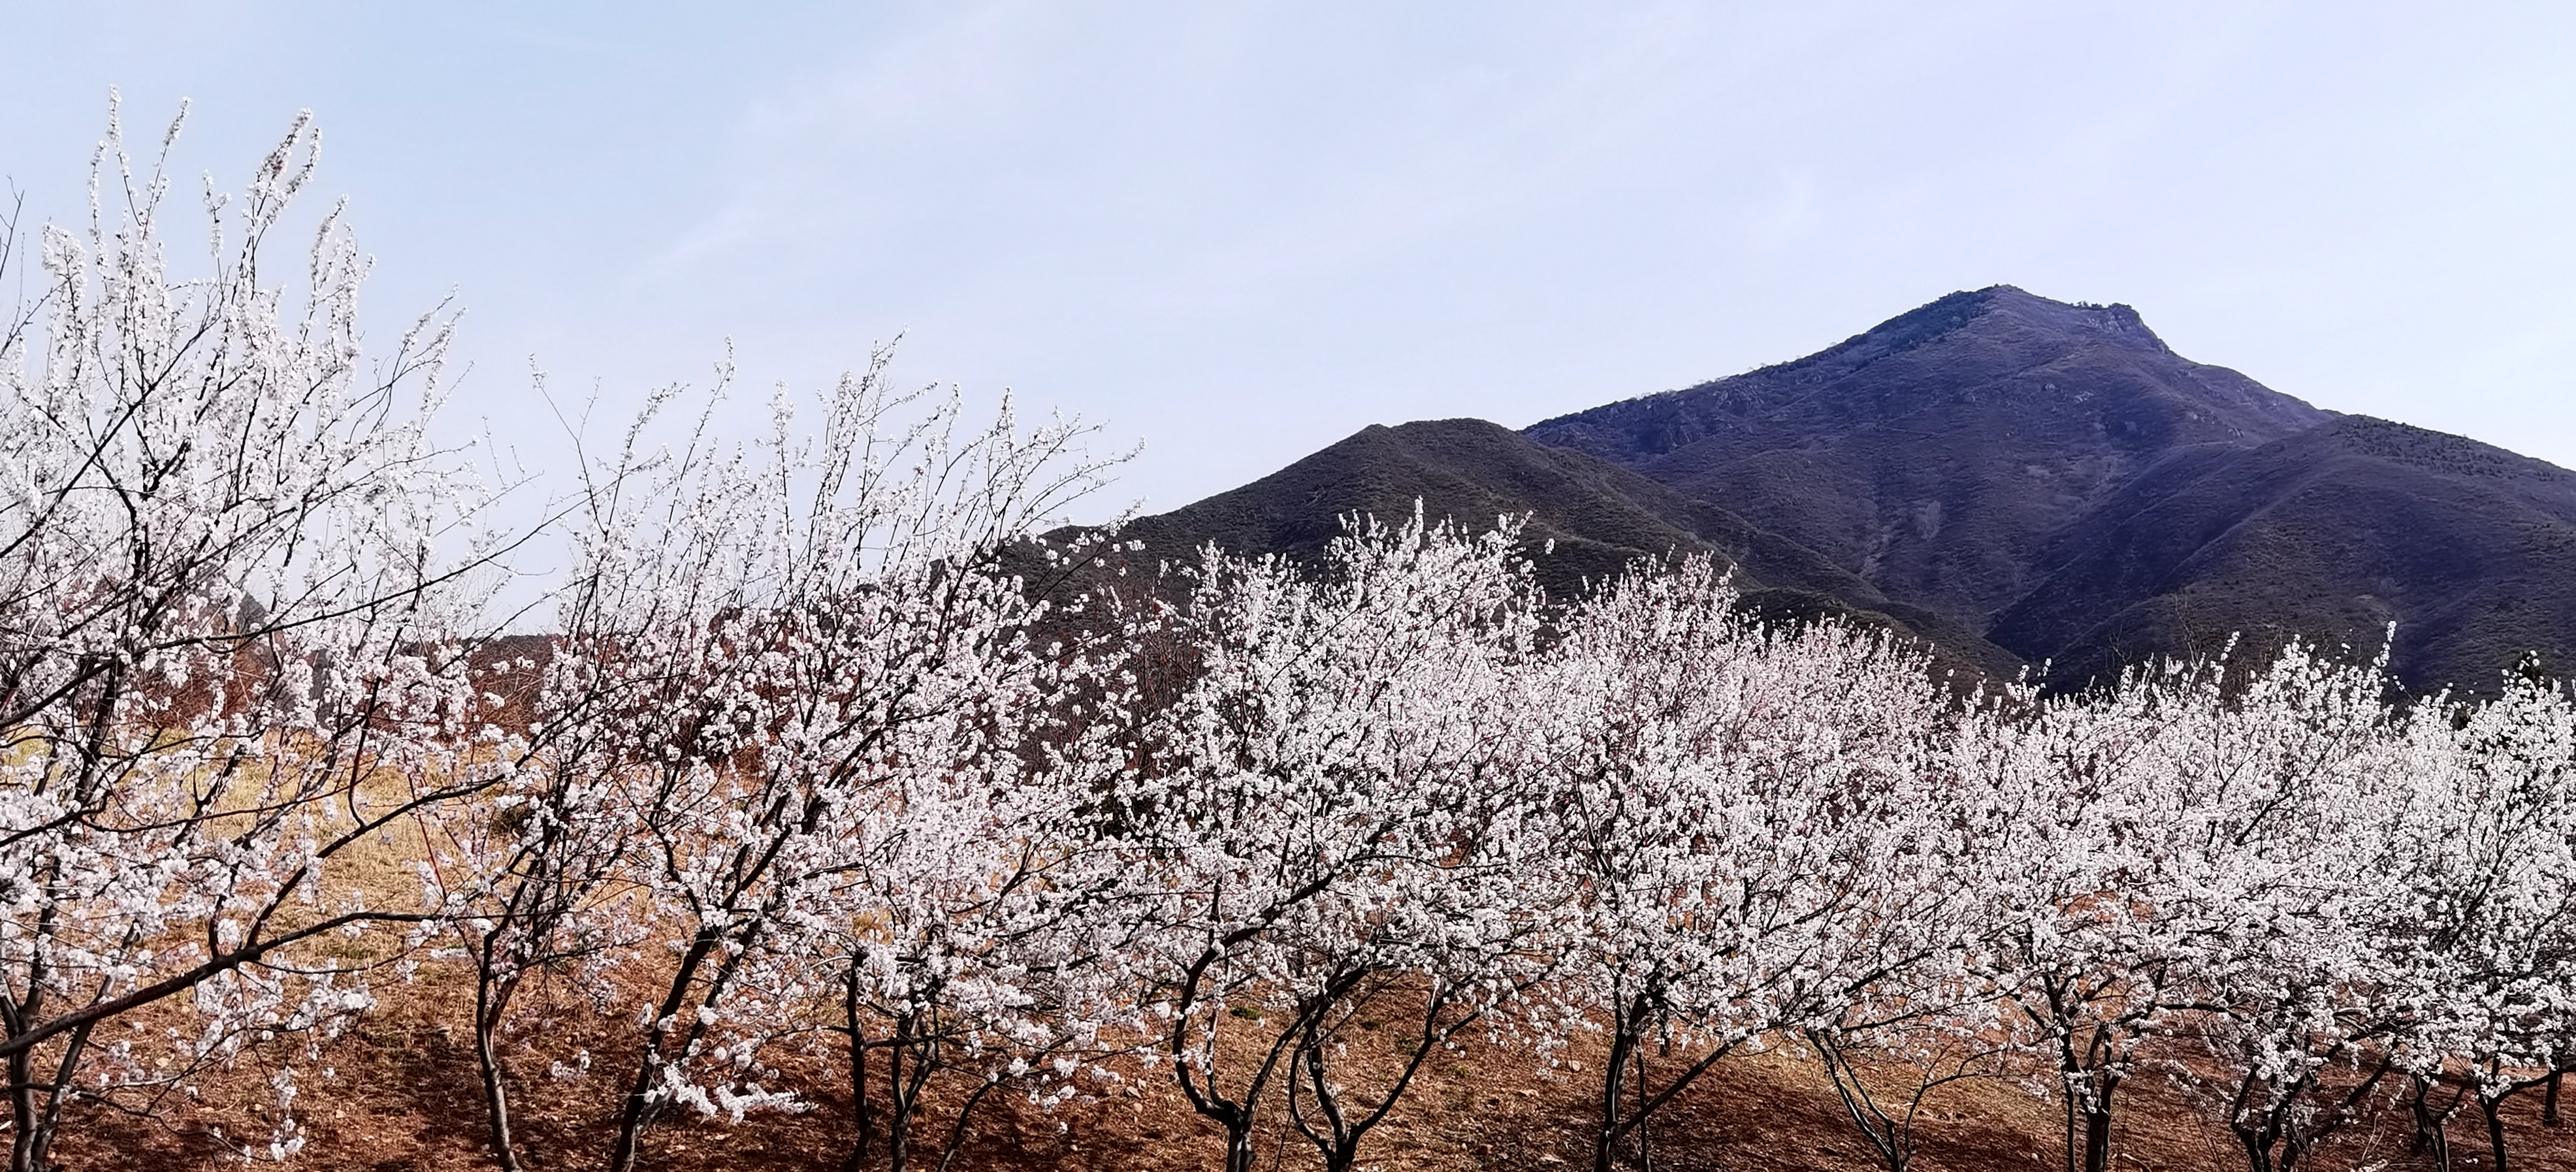 山杏树和山桃树图片